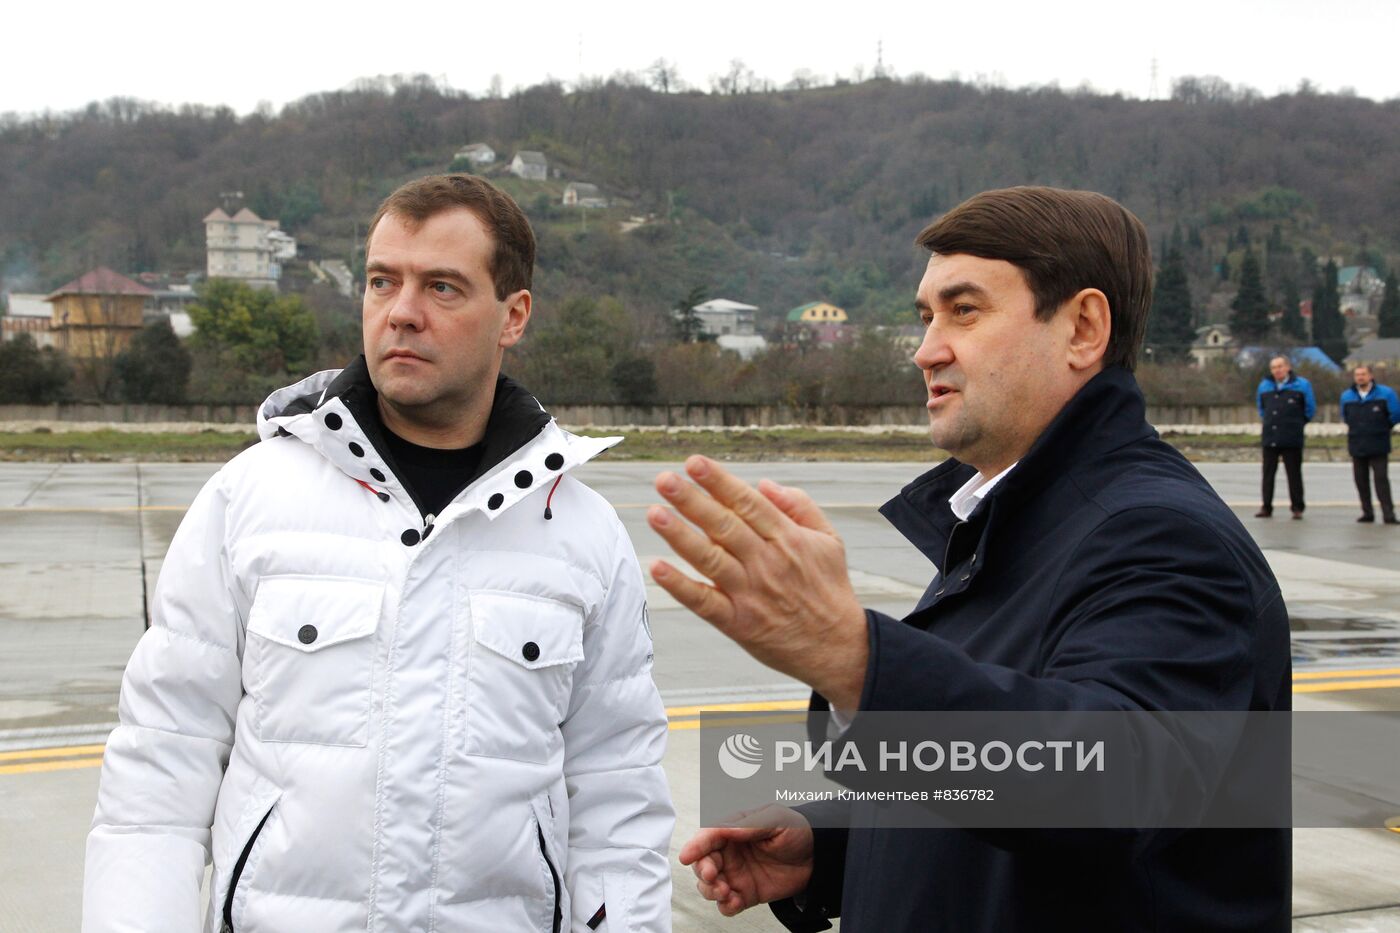 Д.Медведев осмотрел взлетно-посадочную полосу в аэропорту Адлера